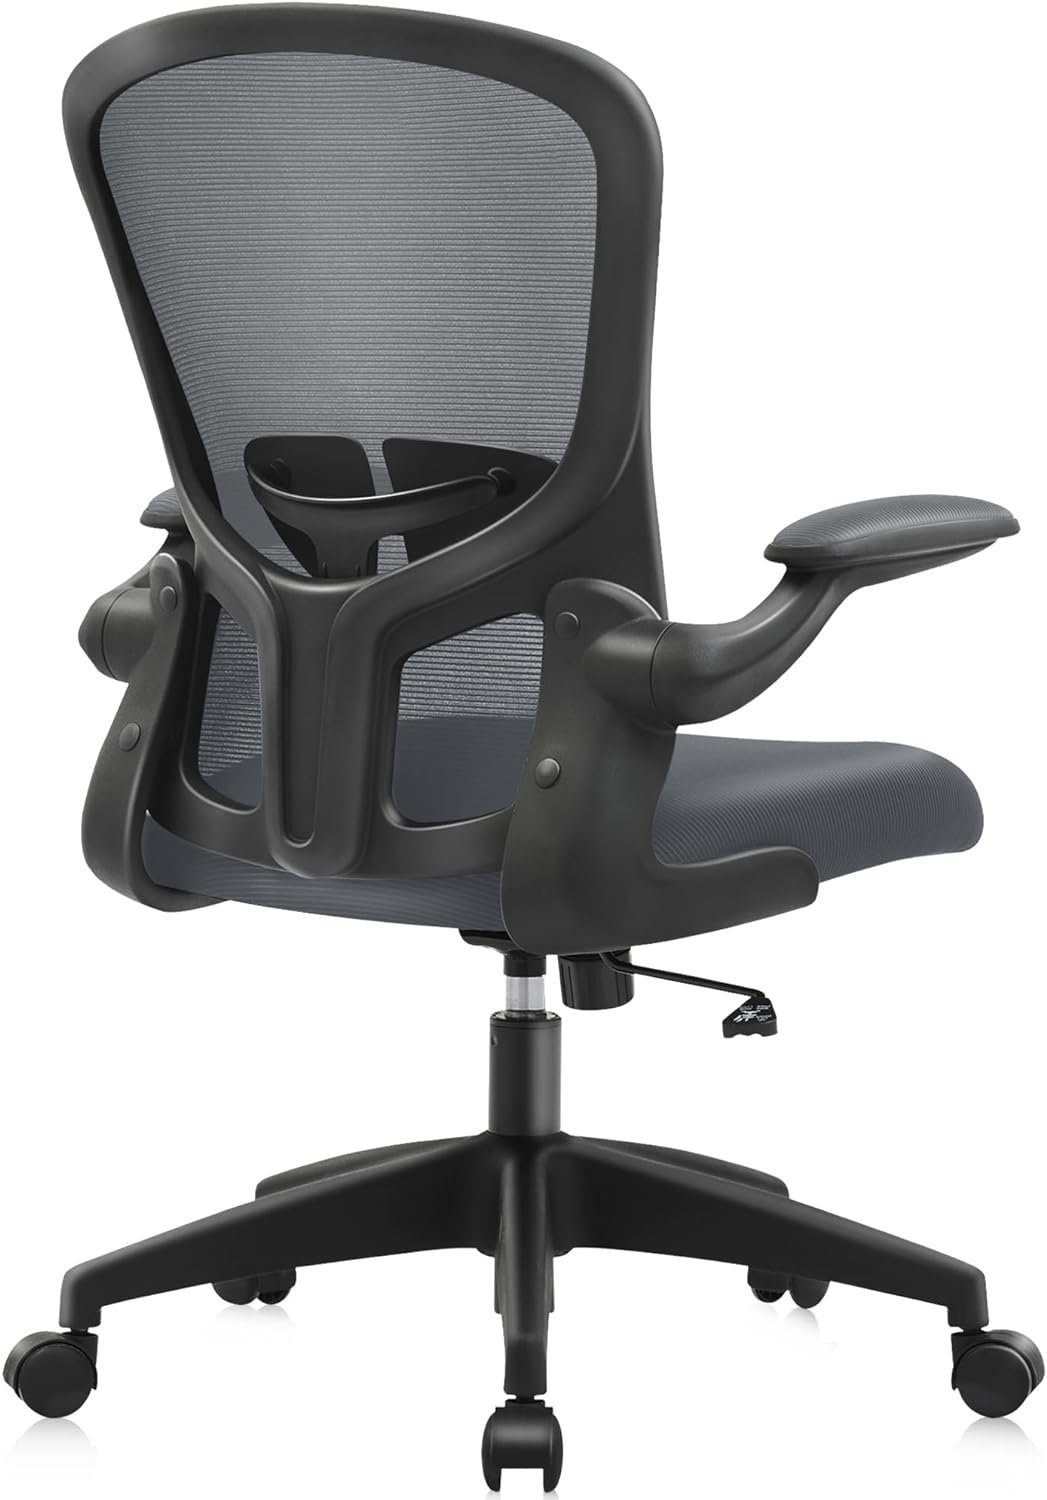 FelixKing Bürostuhl (Ergonomischer Burostuhl,Schreibtischstuhl mit Armlehnen Hochklappbaren Sitz), Verstellbarer Verstellbarer Schreibtischstuhl Bürostuhl